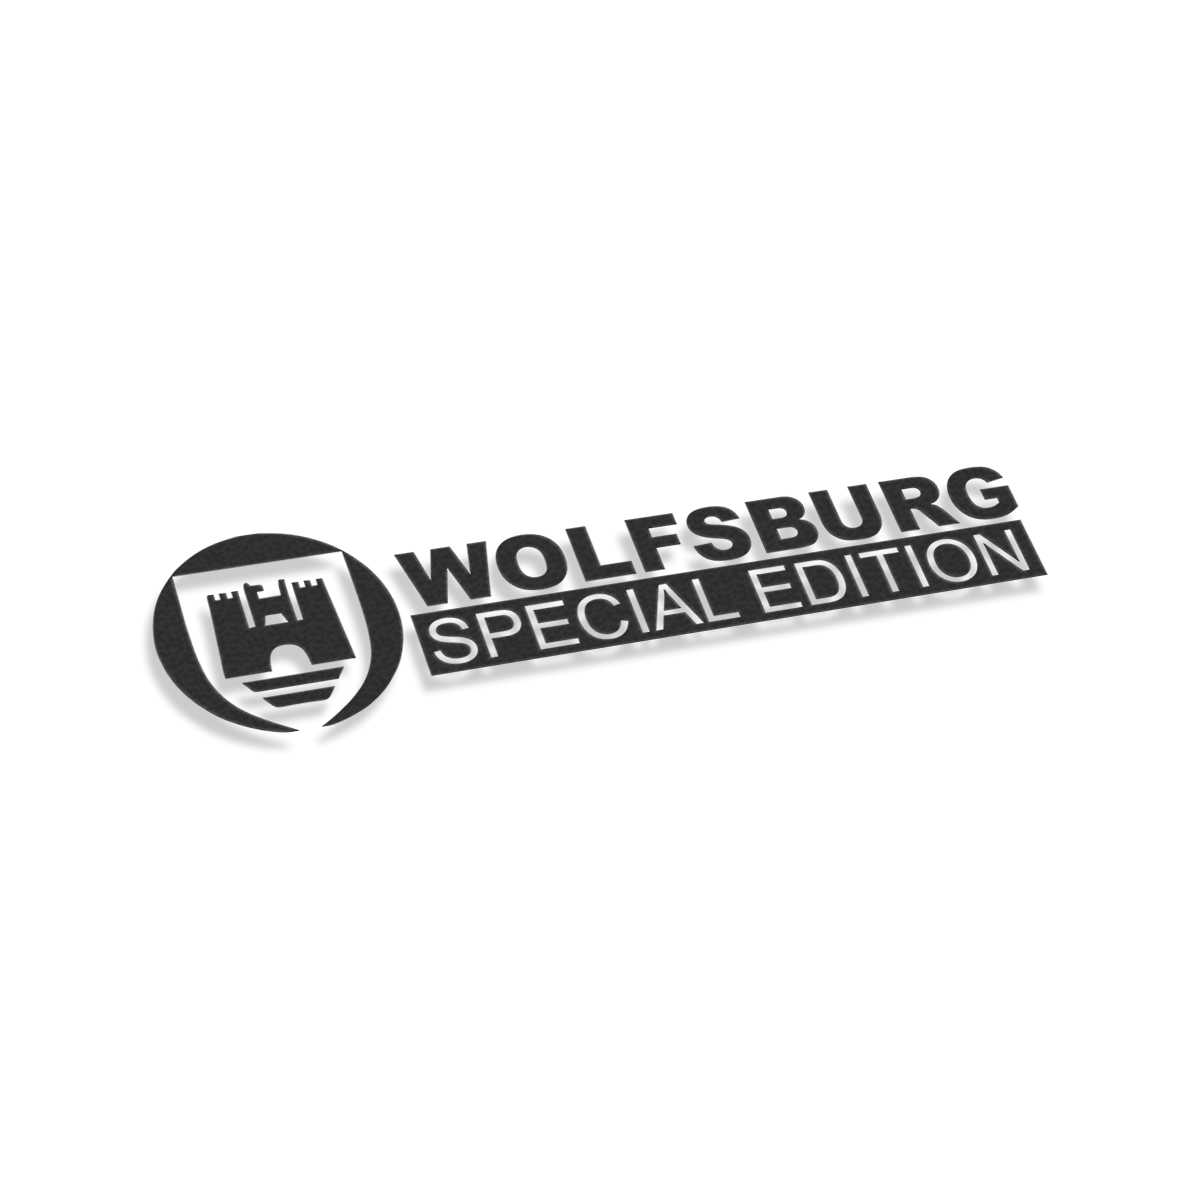 Wolfsburg edition 3D sticker logo 27mm Chrome 